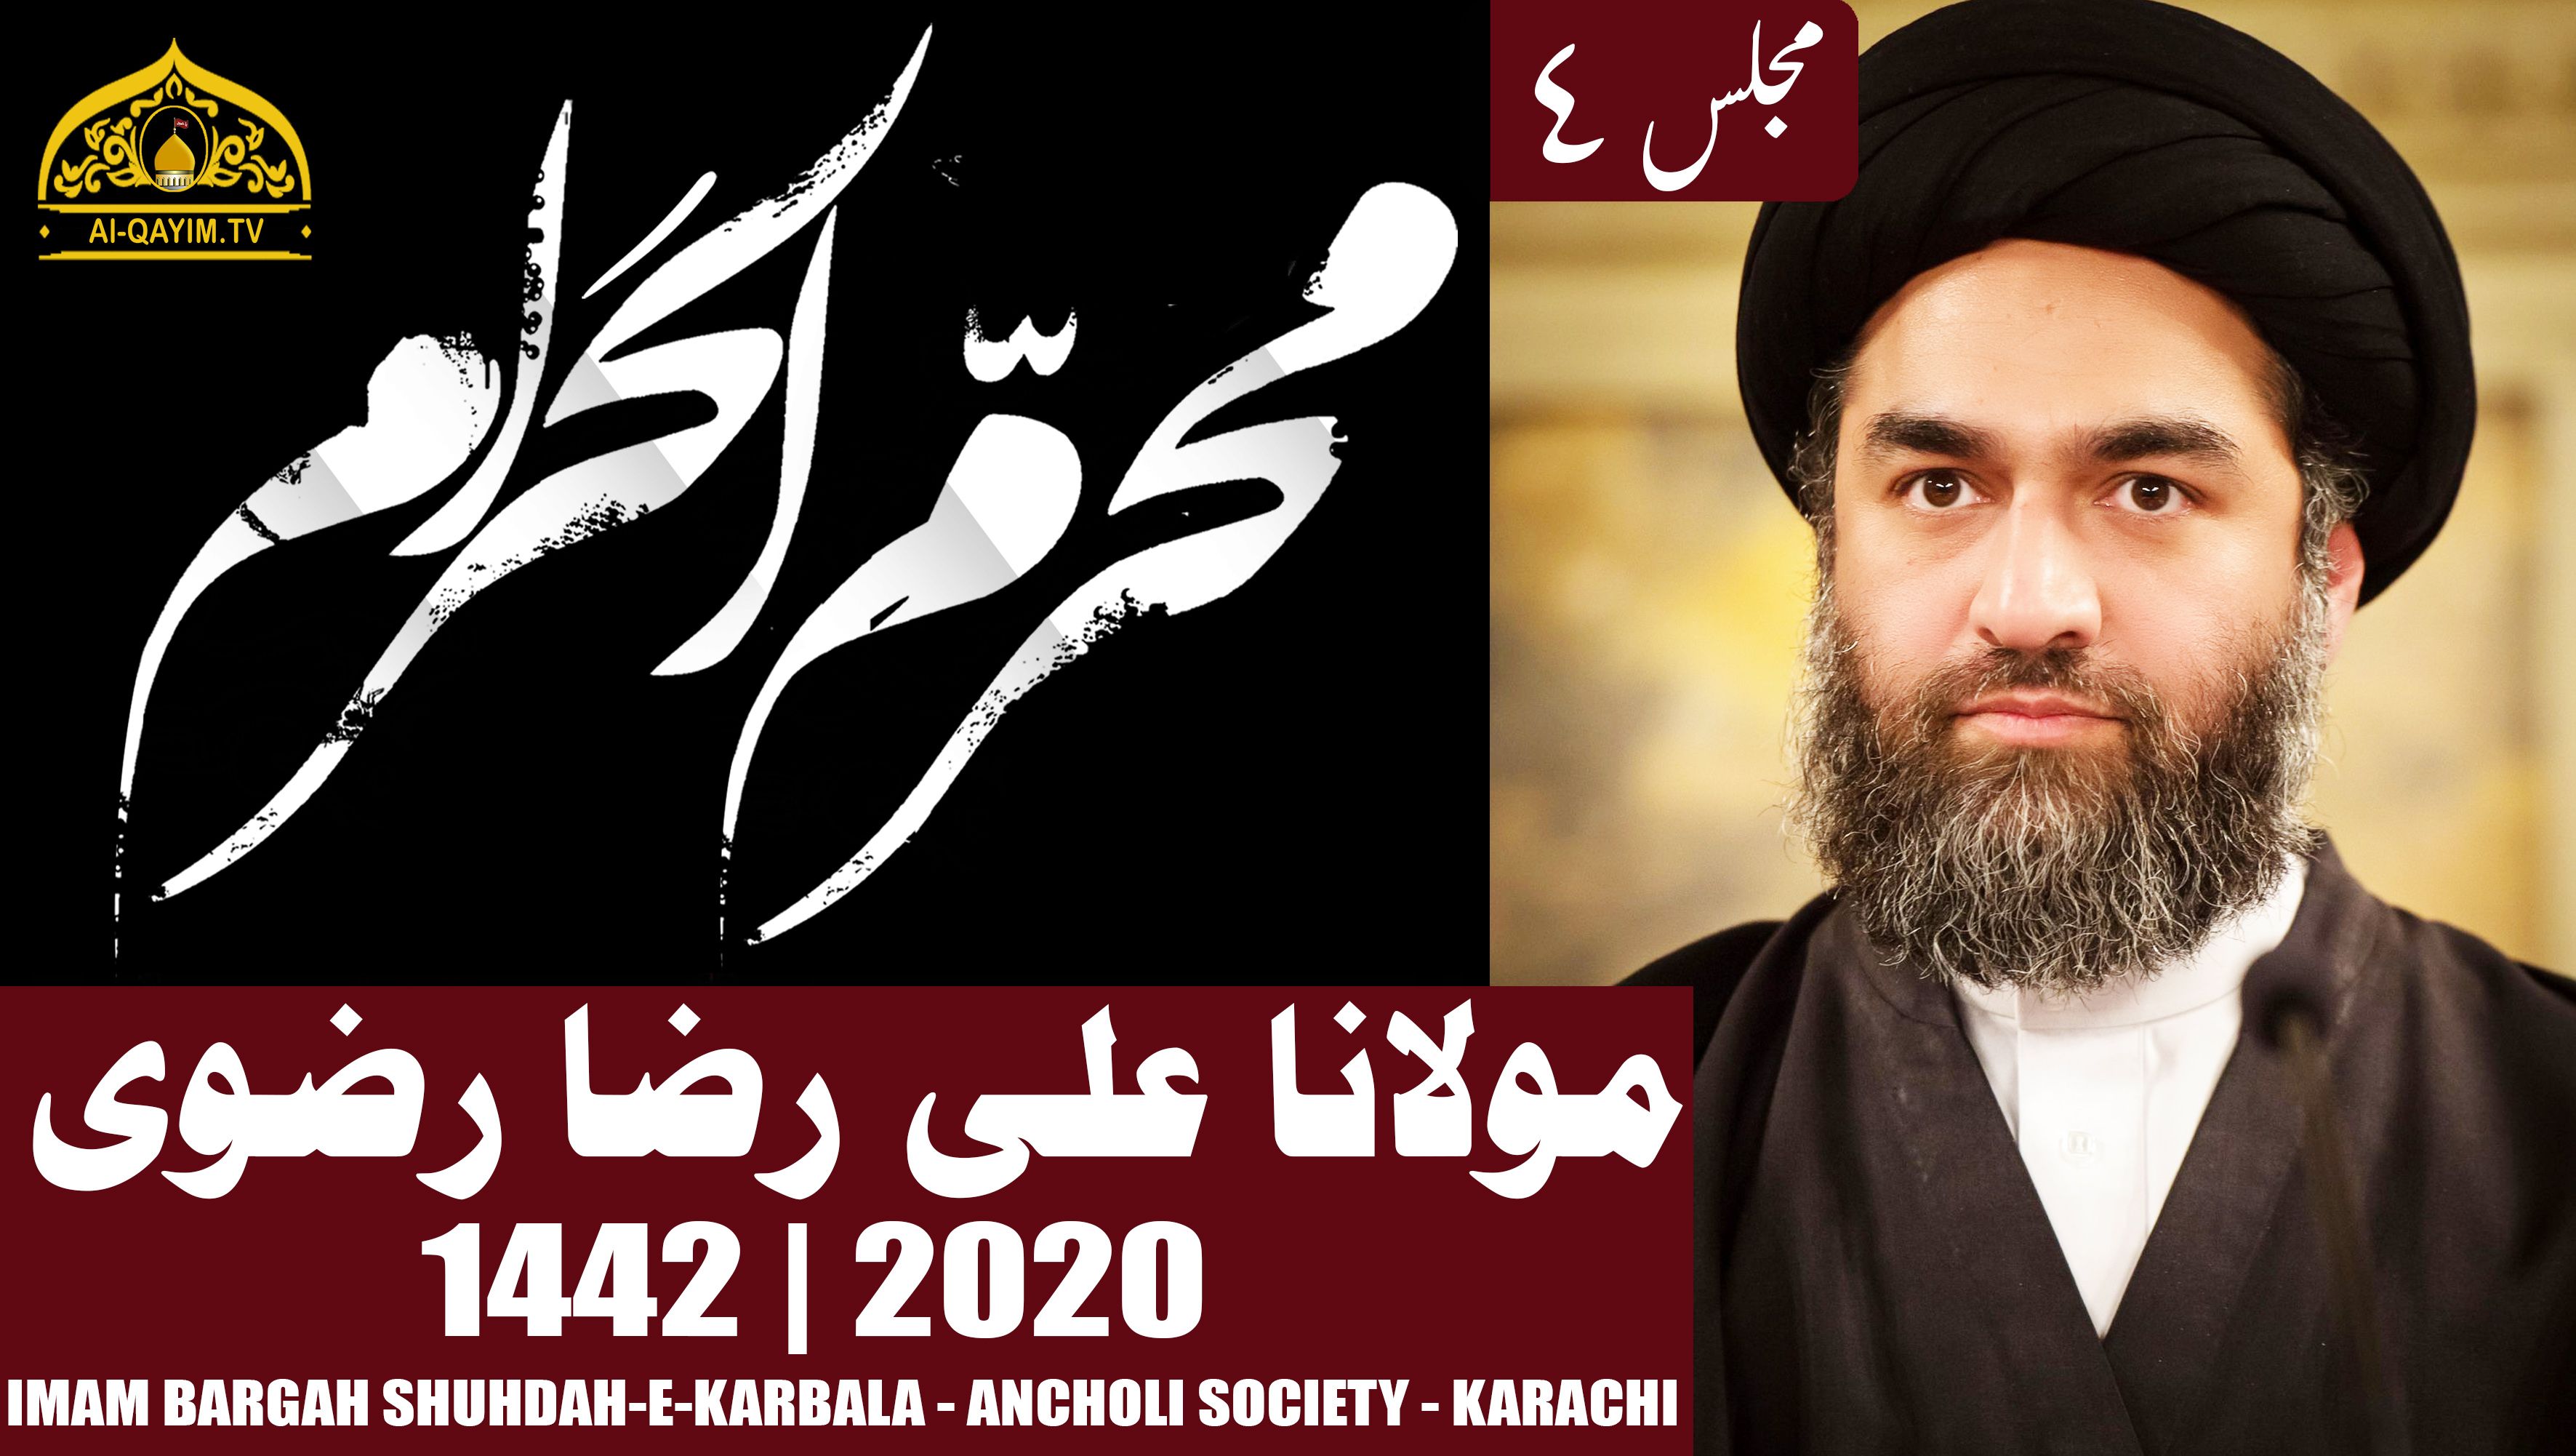 4th Muharram Majlis - 1442/2020 - Maulana Ali Raza Rizvi - Imam Bargah Shuhdah-e-Karbala - Ancholi